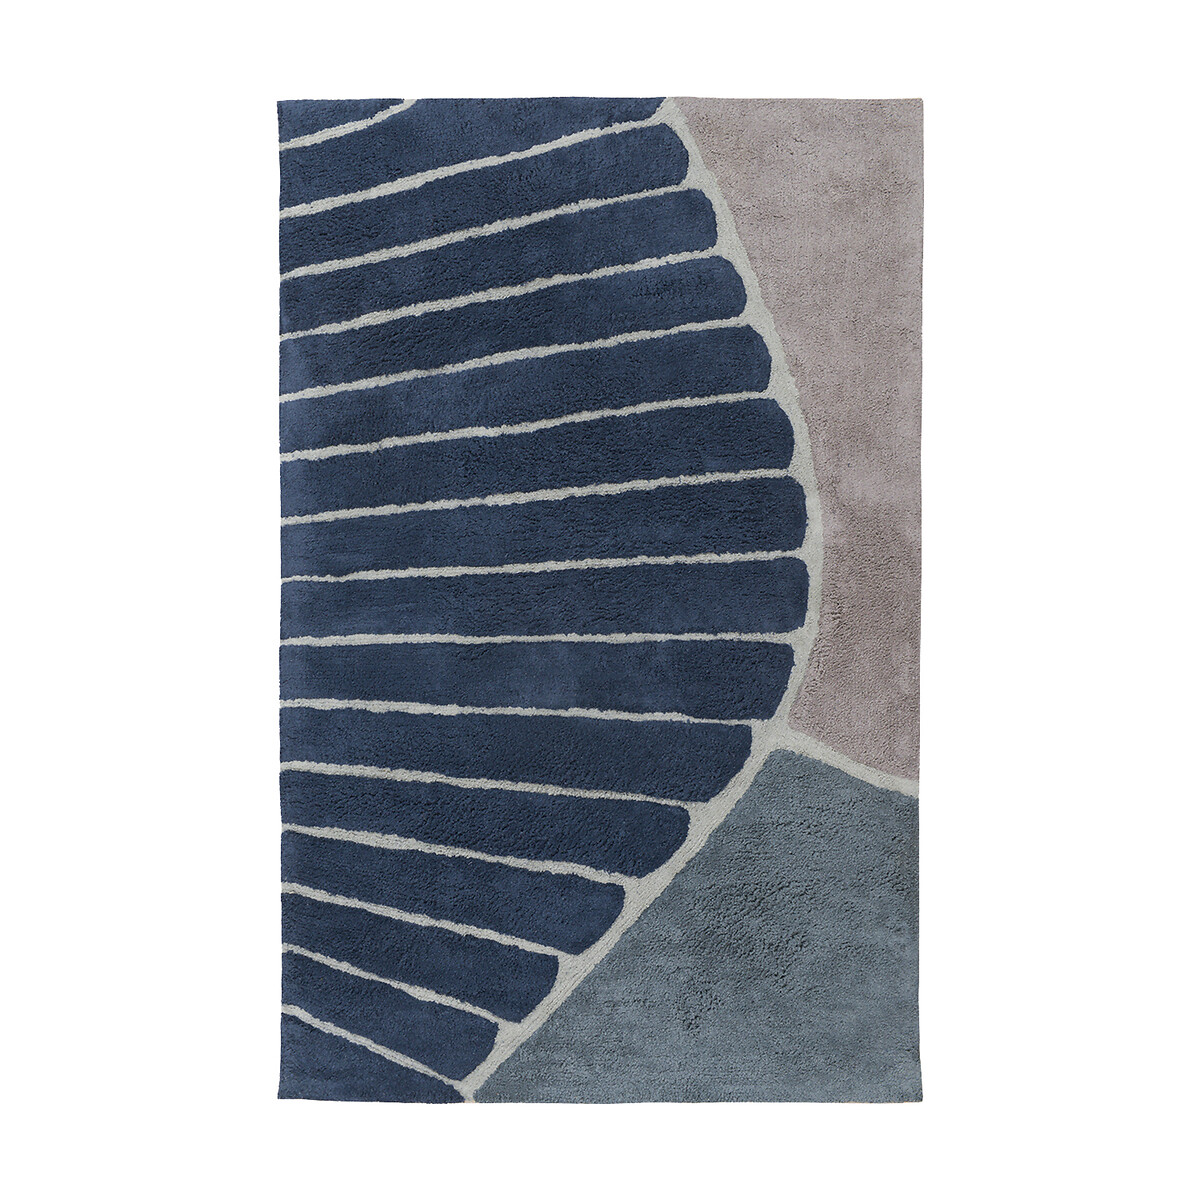 Ковер из хлопка с рисунком Tea plantation 200 x 300 см серый